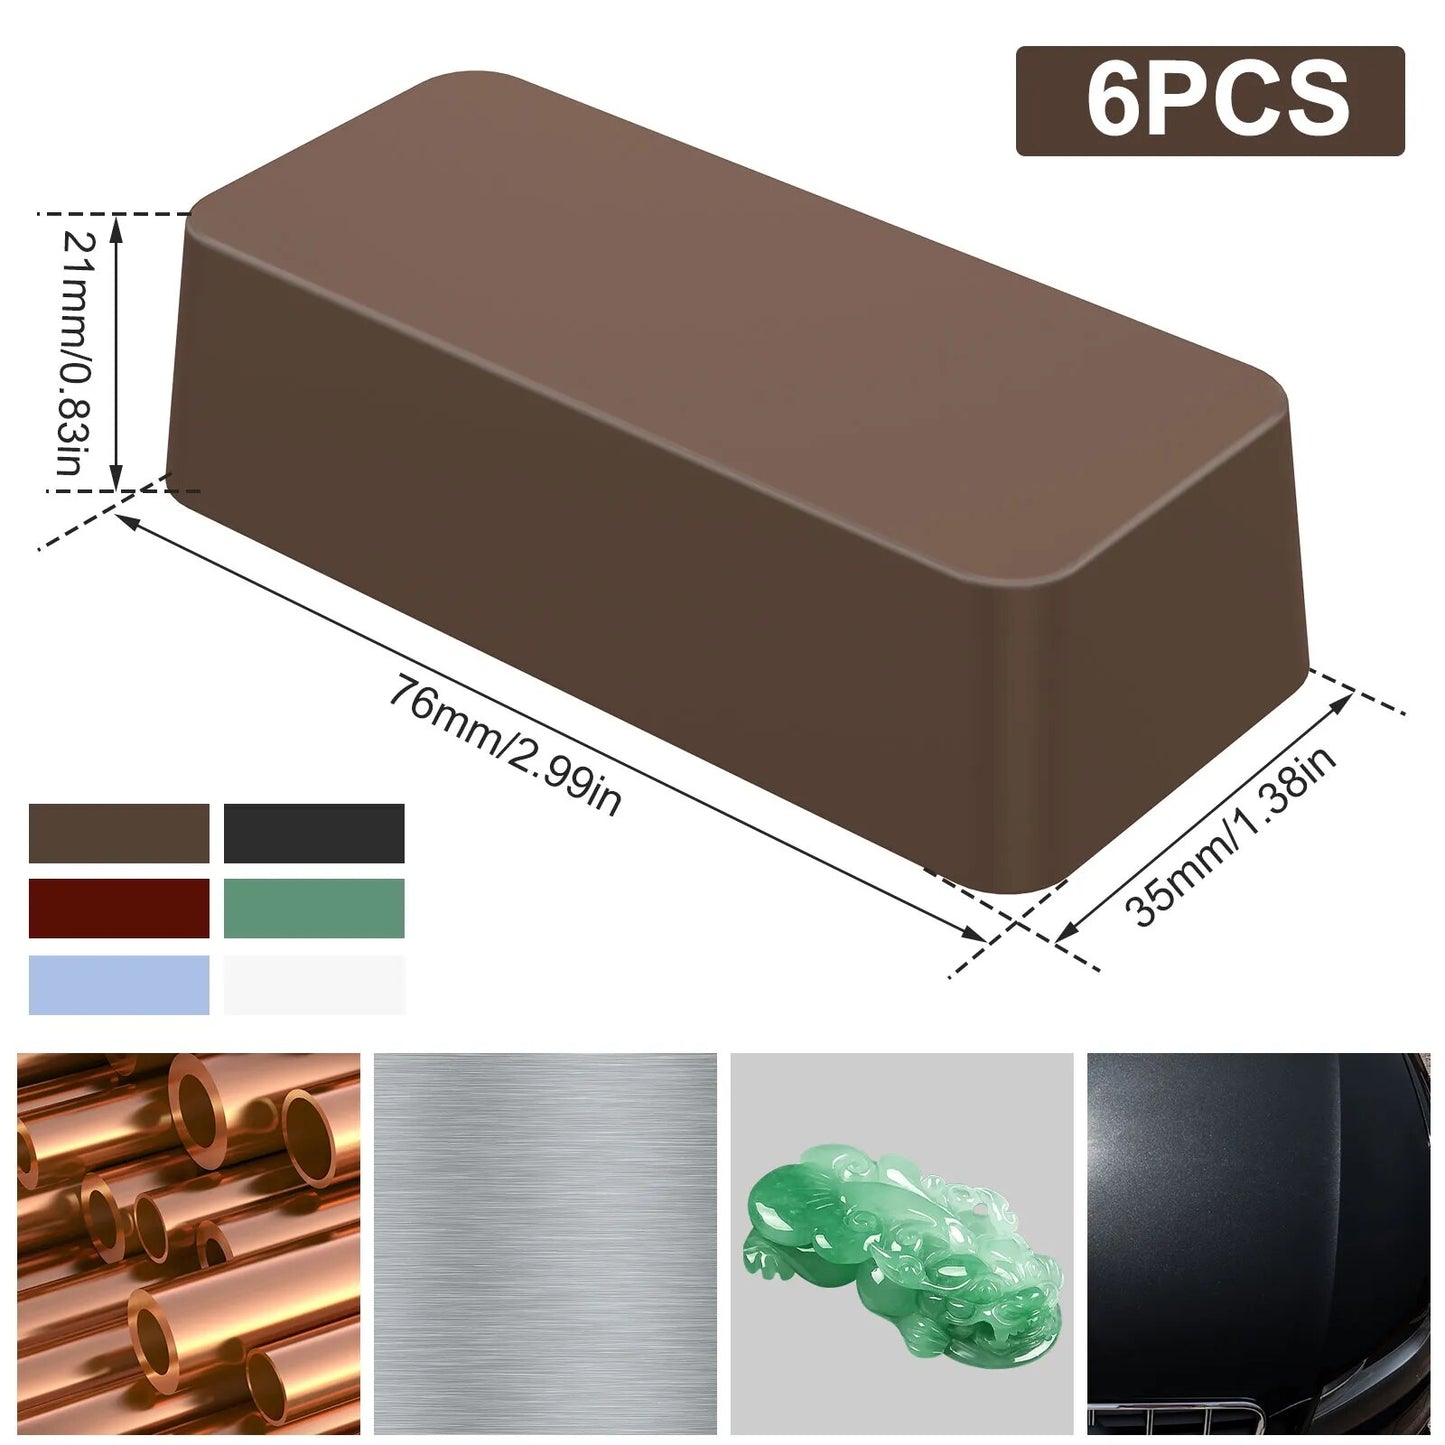 6Pcs Metal Grinding Paste Polishing Kit